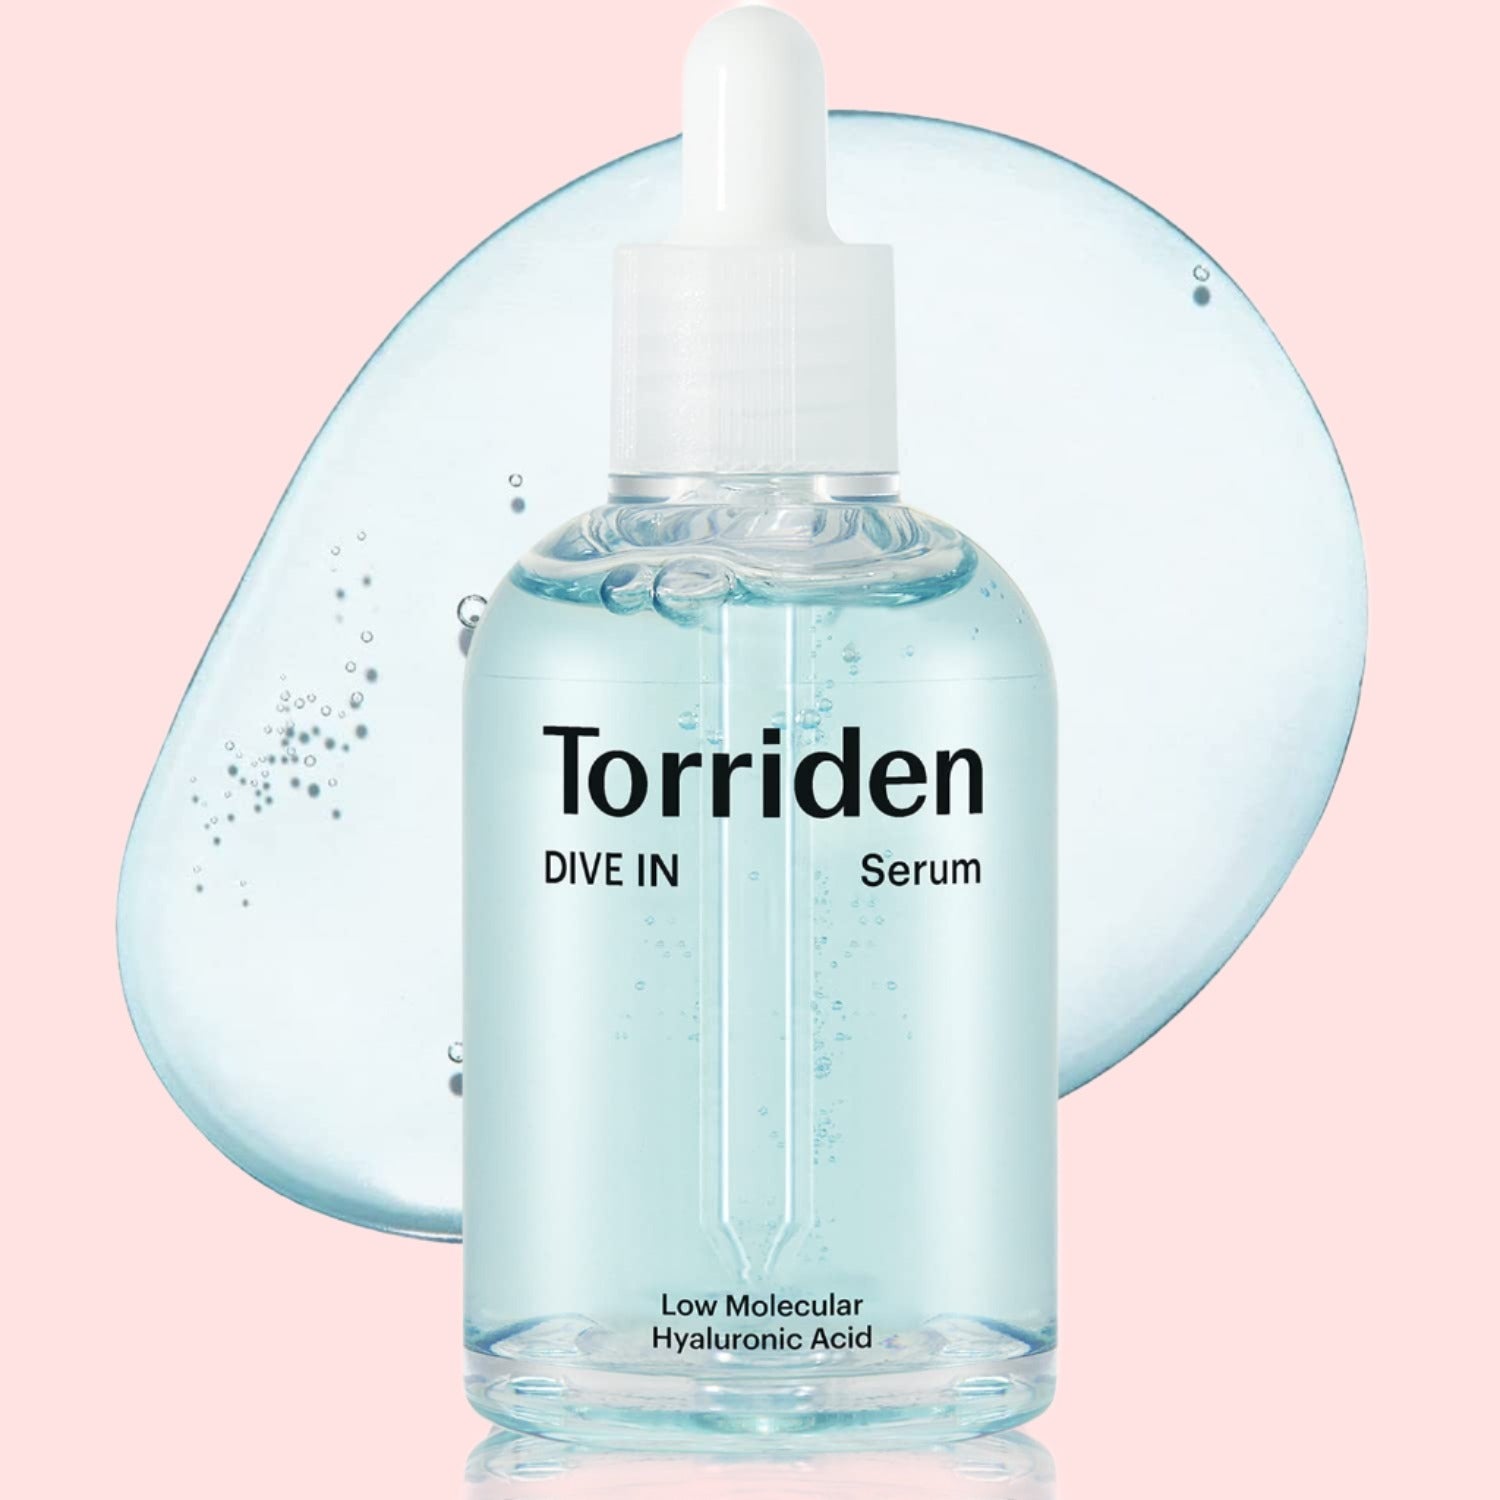 Torriden DIVE-IN Low-Molecular Hyaluronic Acid Serum